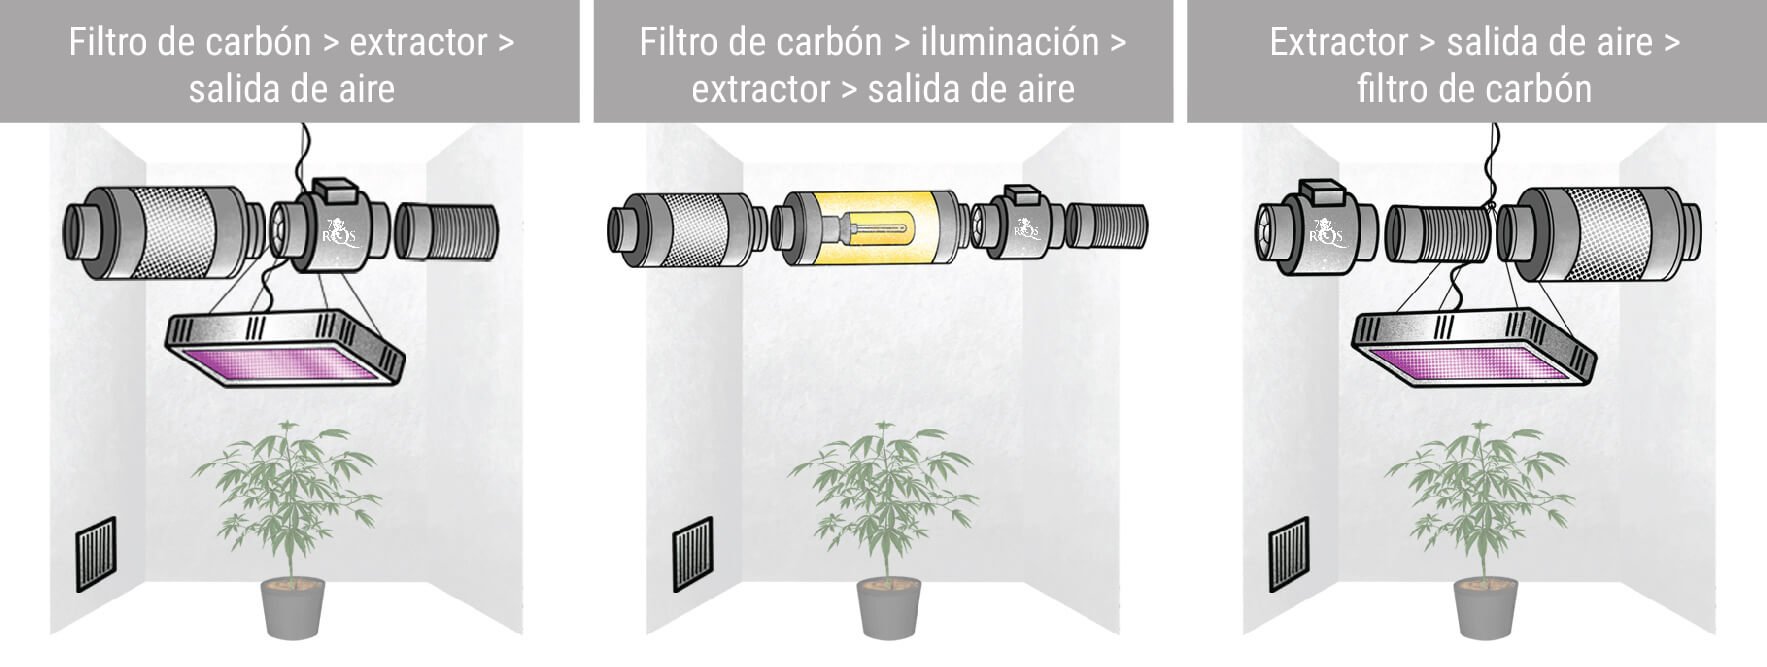 Diferentes configuraciones con extractores y filtros de carbón